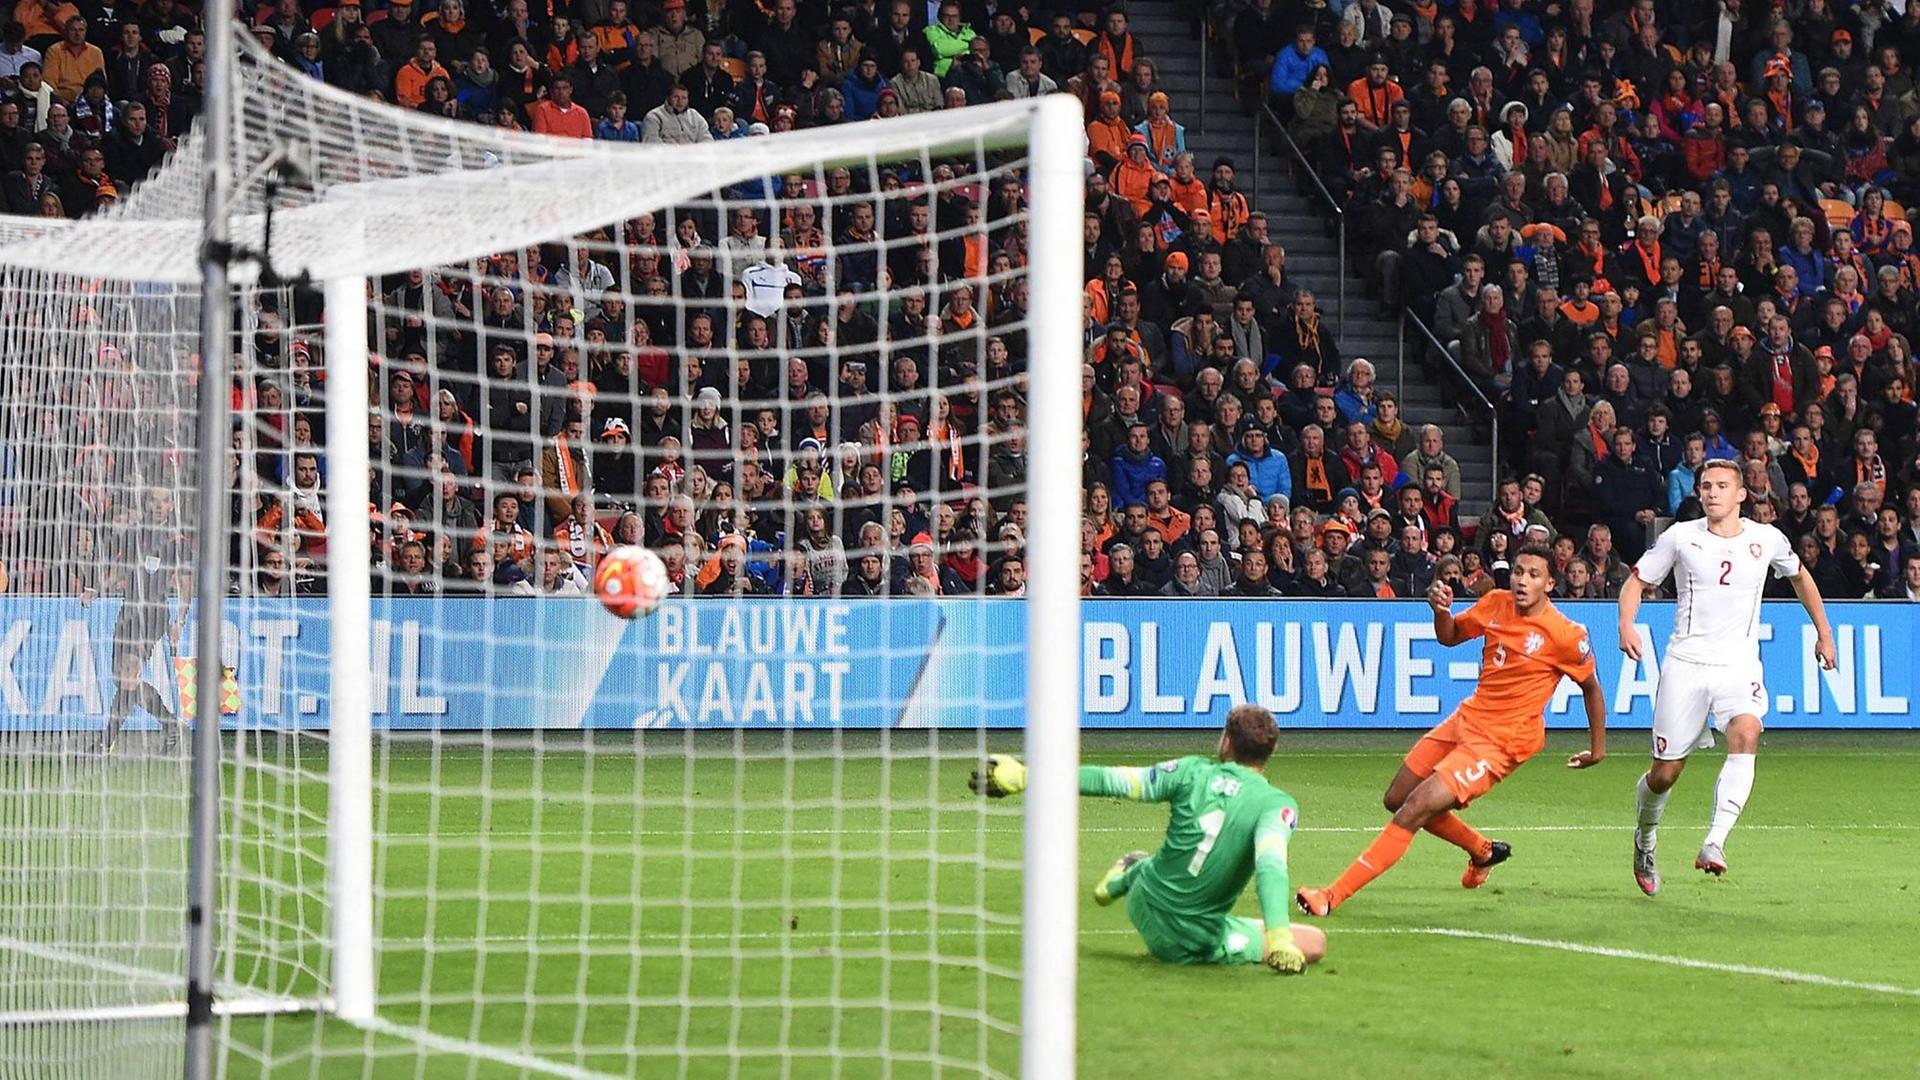 0:1 - Die Niederlande liegen im Oktober 2015 gegen Tschechien in der EM-Qualifikation zurück und scheitern schließlich.